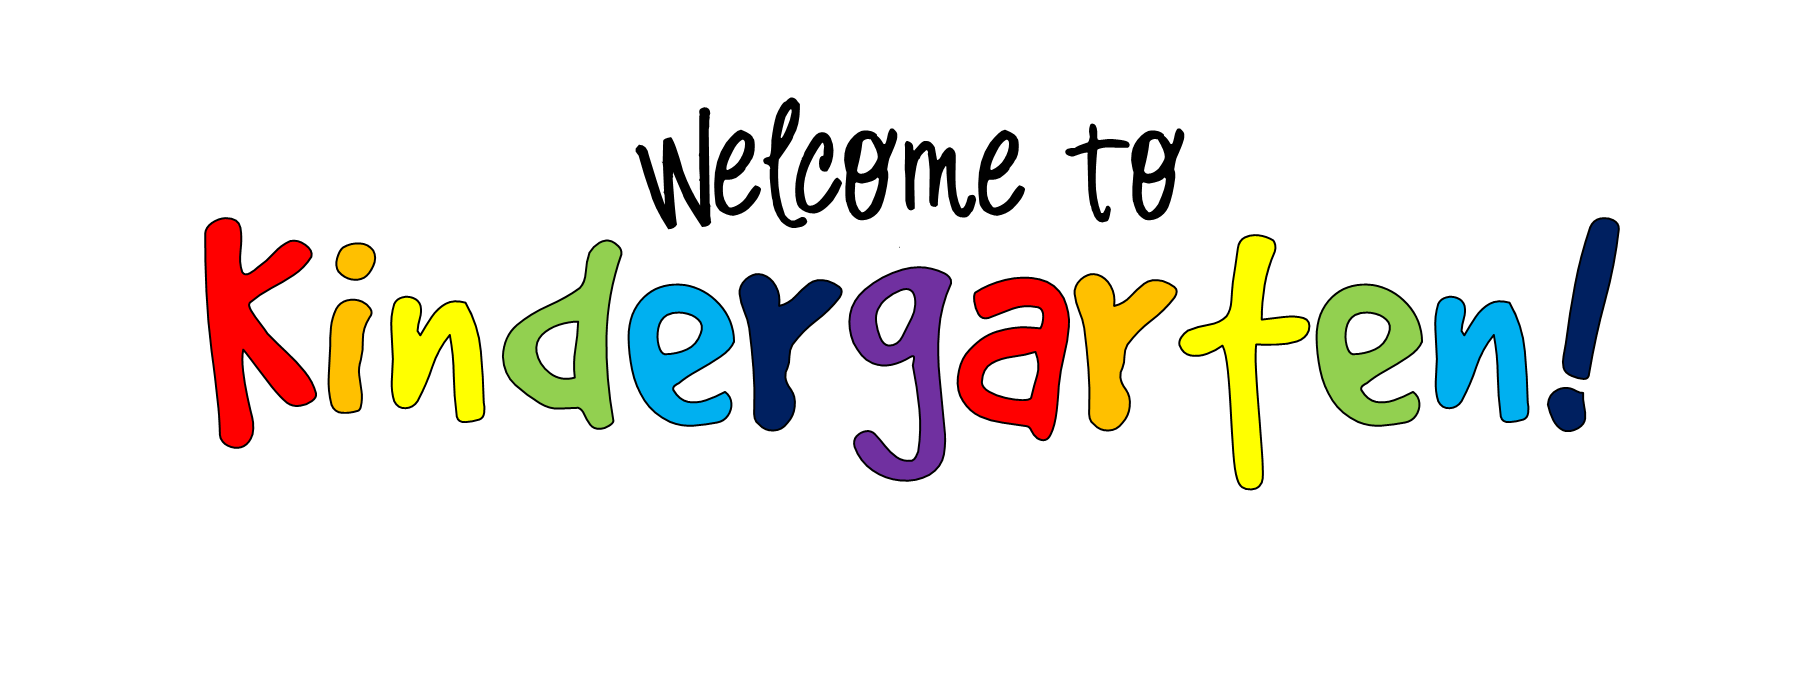 kindergarten word clip art - photo #9